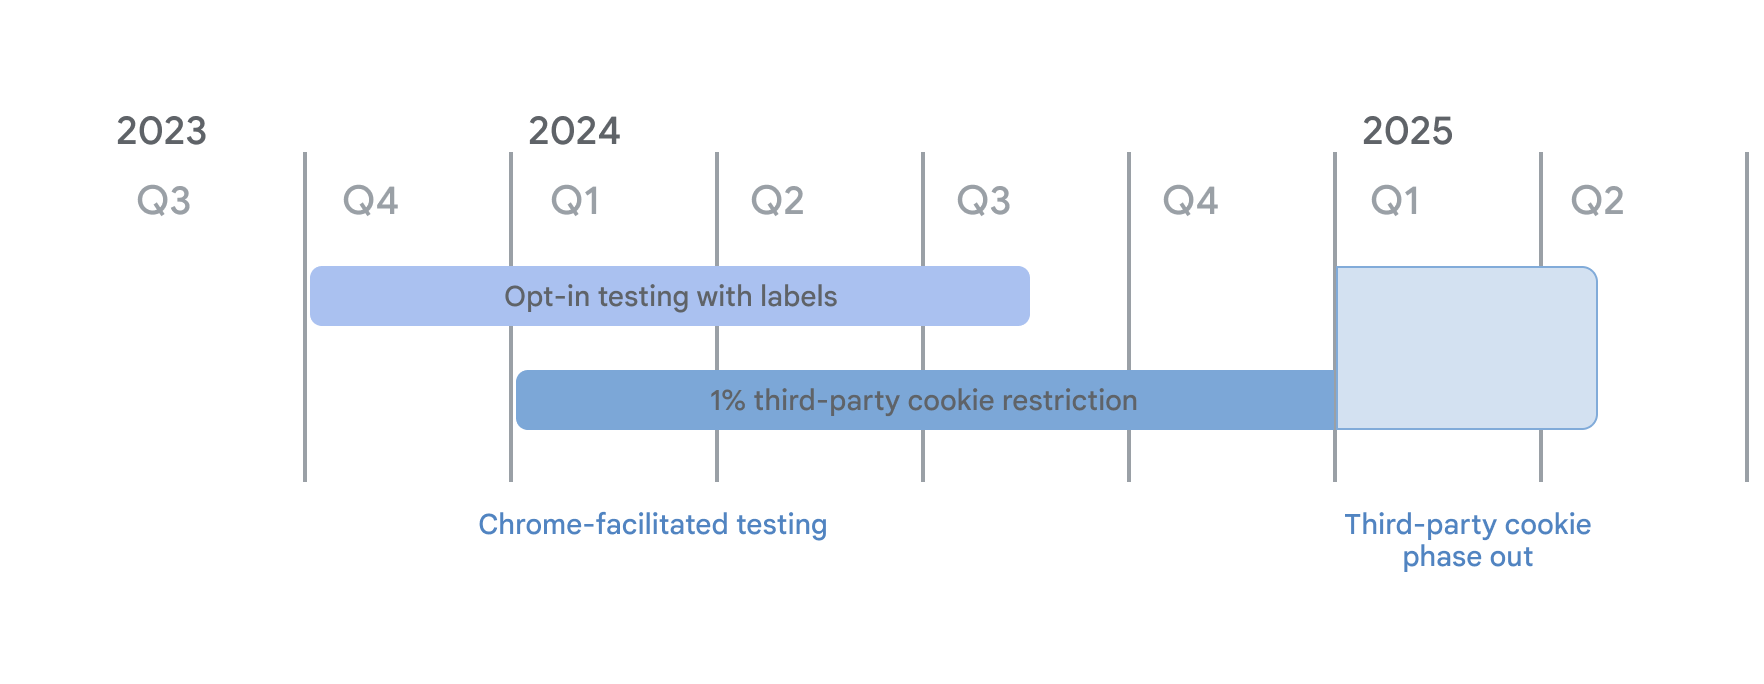 第三方 Cookie 分析時間軸。根據 Chrome 協助進行的測試，標籤模式的參與測試將於 2023 年第 4 季開始，而 1% 的 3PC 限制則自 2024 年 1 月 4 日起生效。這兩種做法都會持續到 2025 年第 1 季，屆時將逐步淘汰第三方 Cookie。